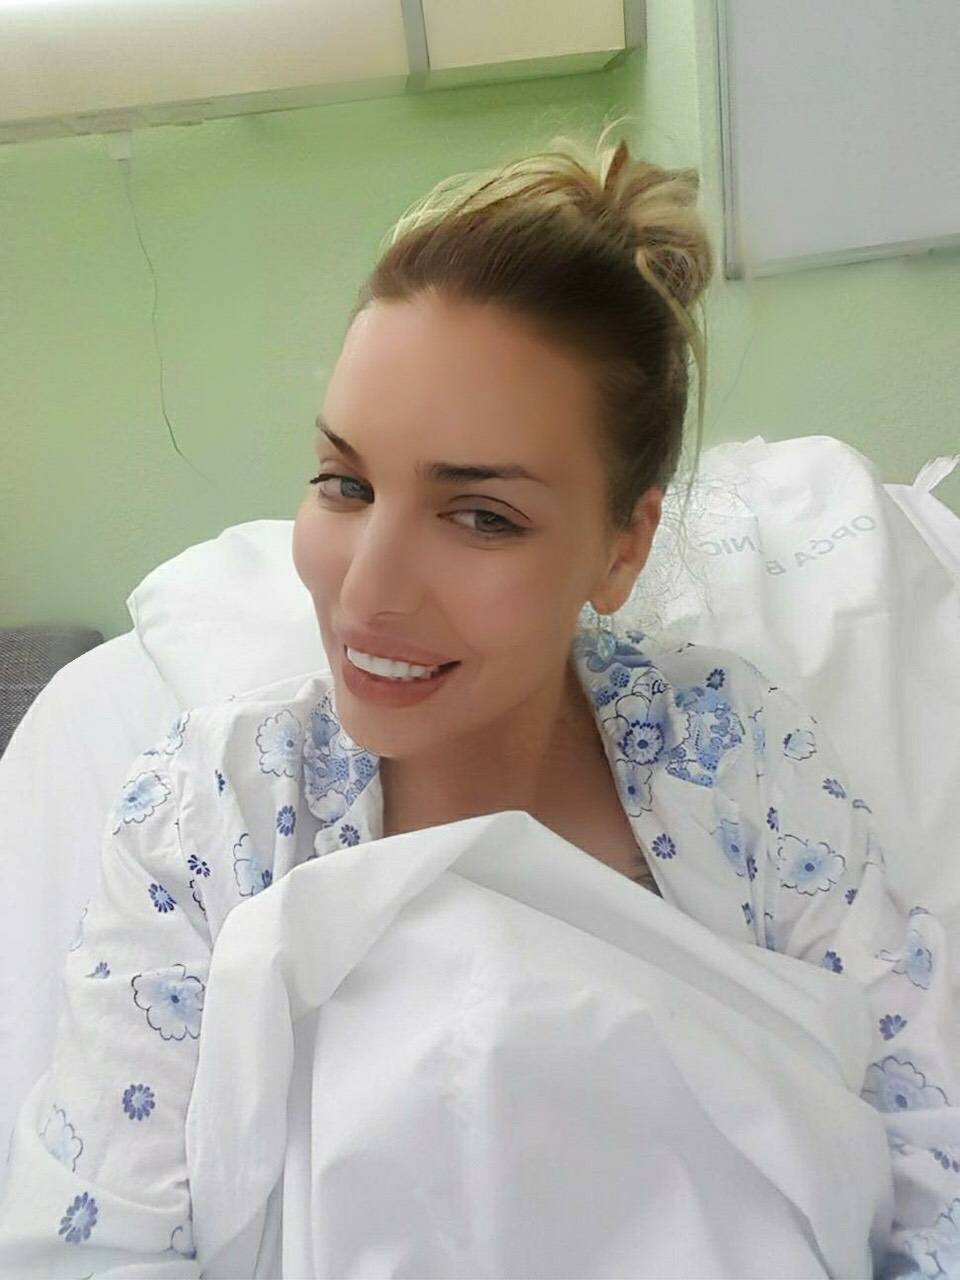 Ava Karabatić pijana divljala po bolnici: 'Znate li vi tko sam ja?'